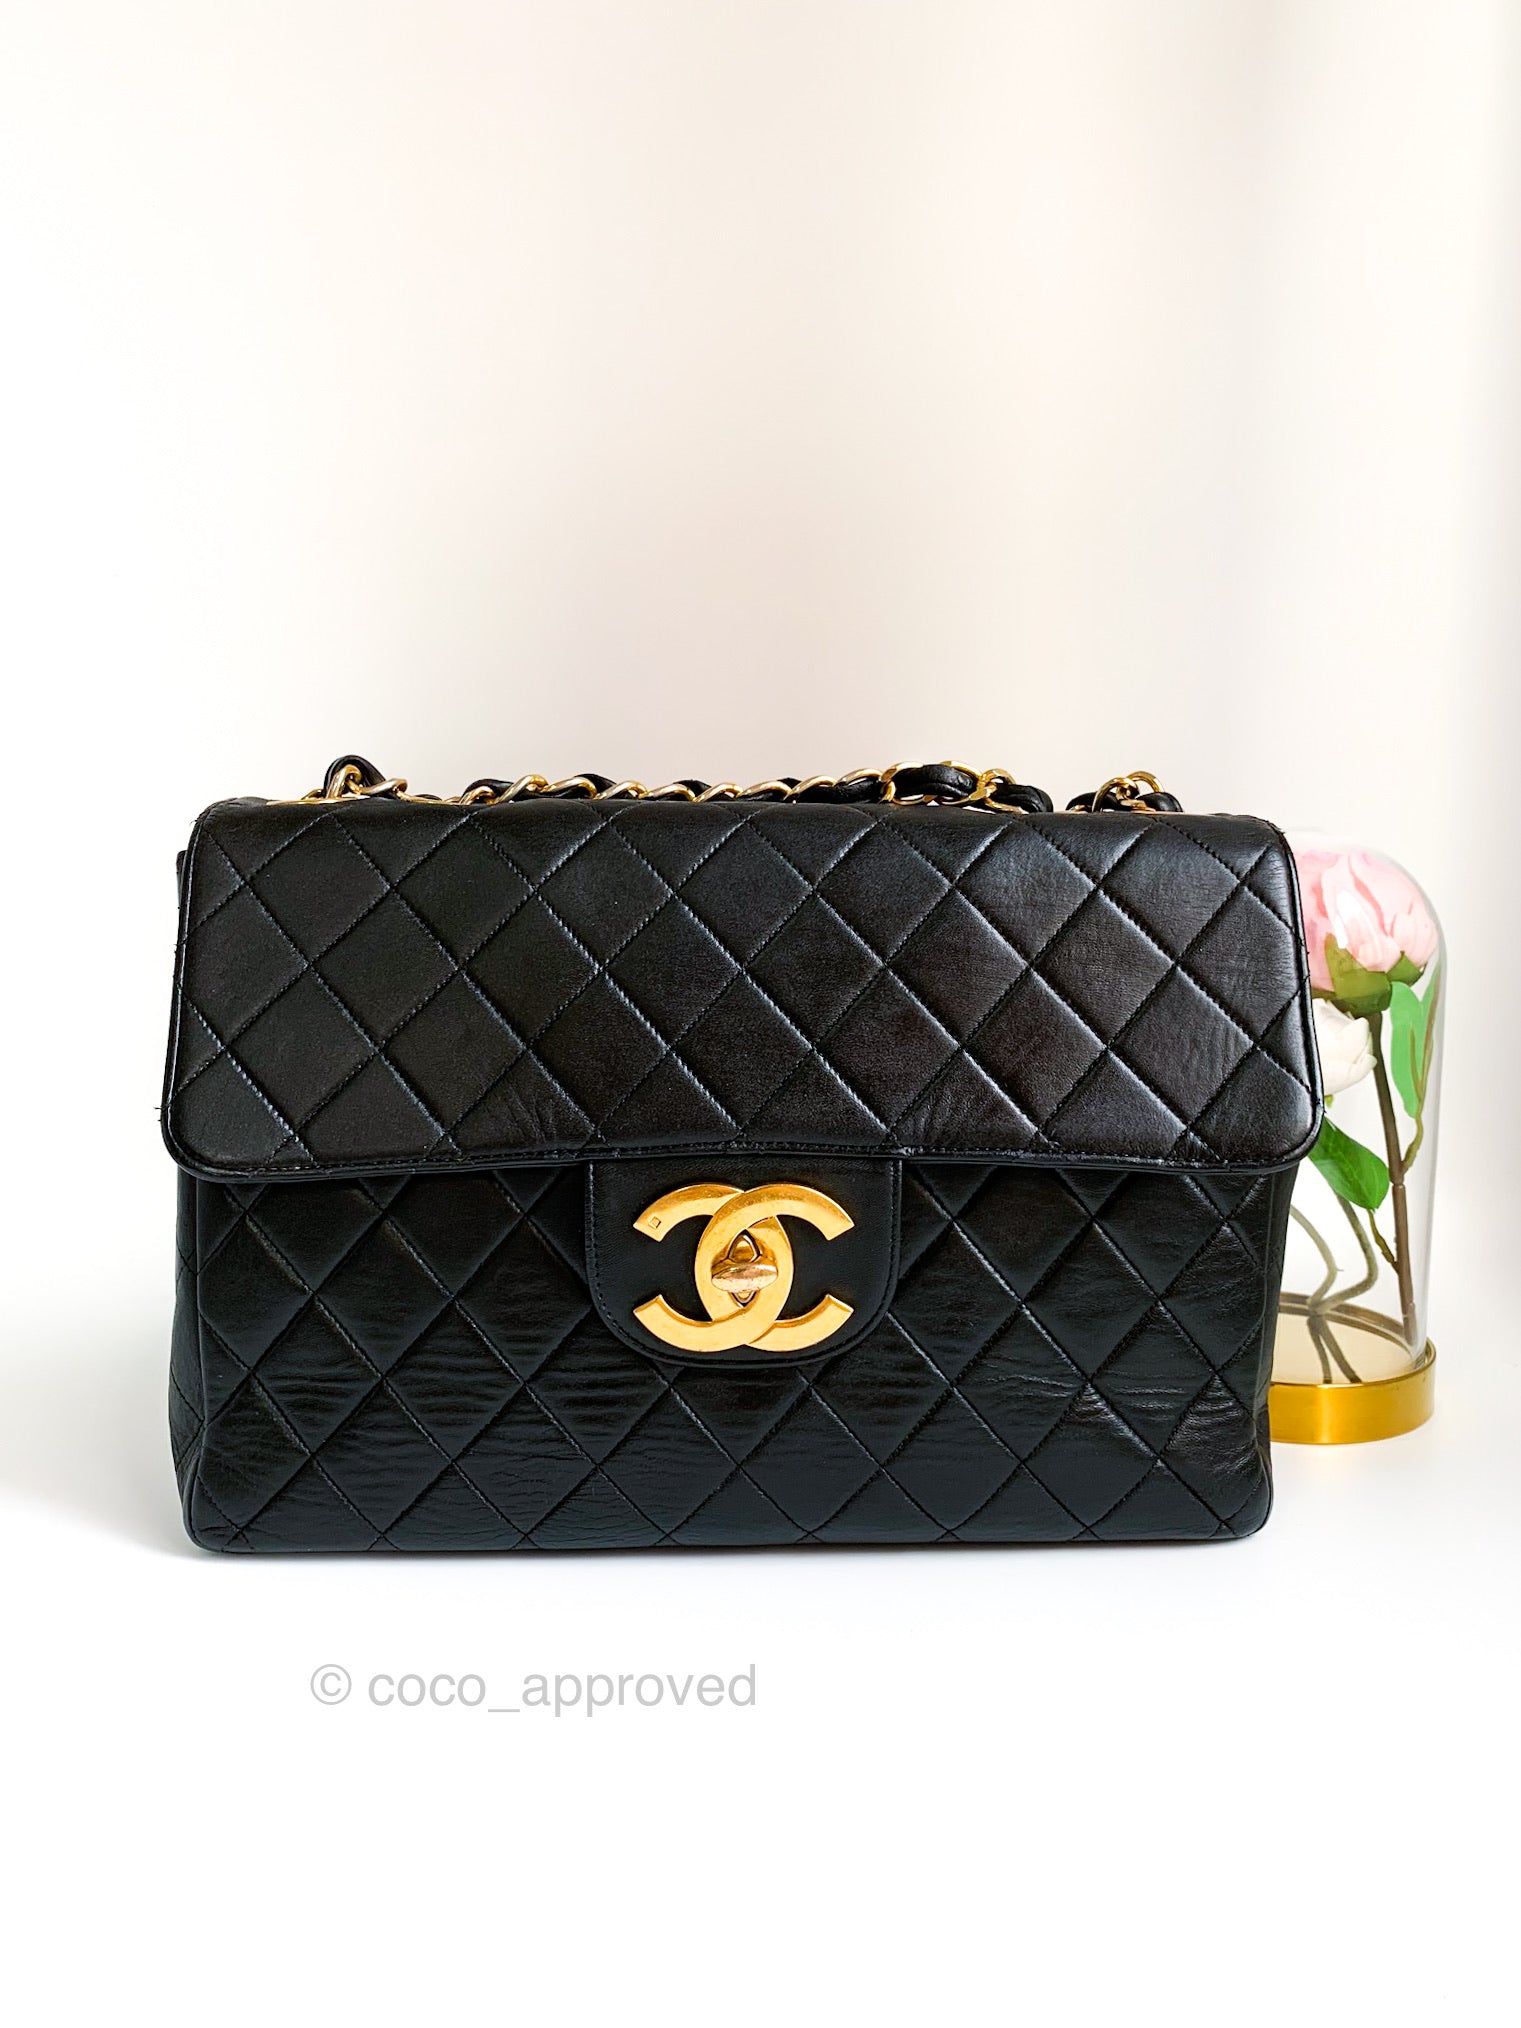 Rare Chanel Vintage Caviar Large/Jumbo Square Classic Flap Bag 24k